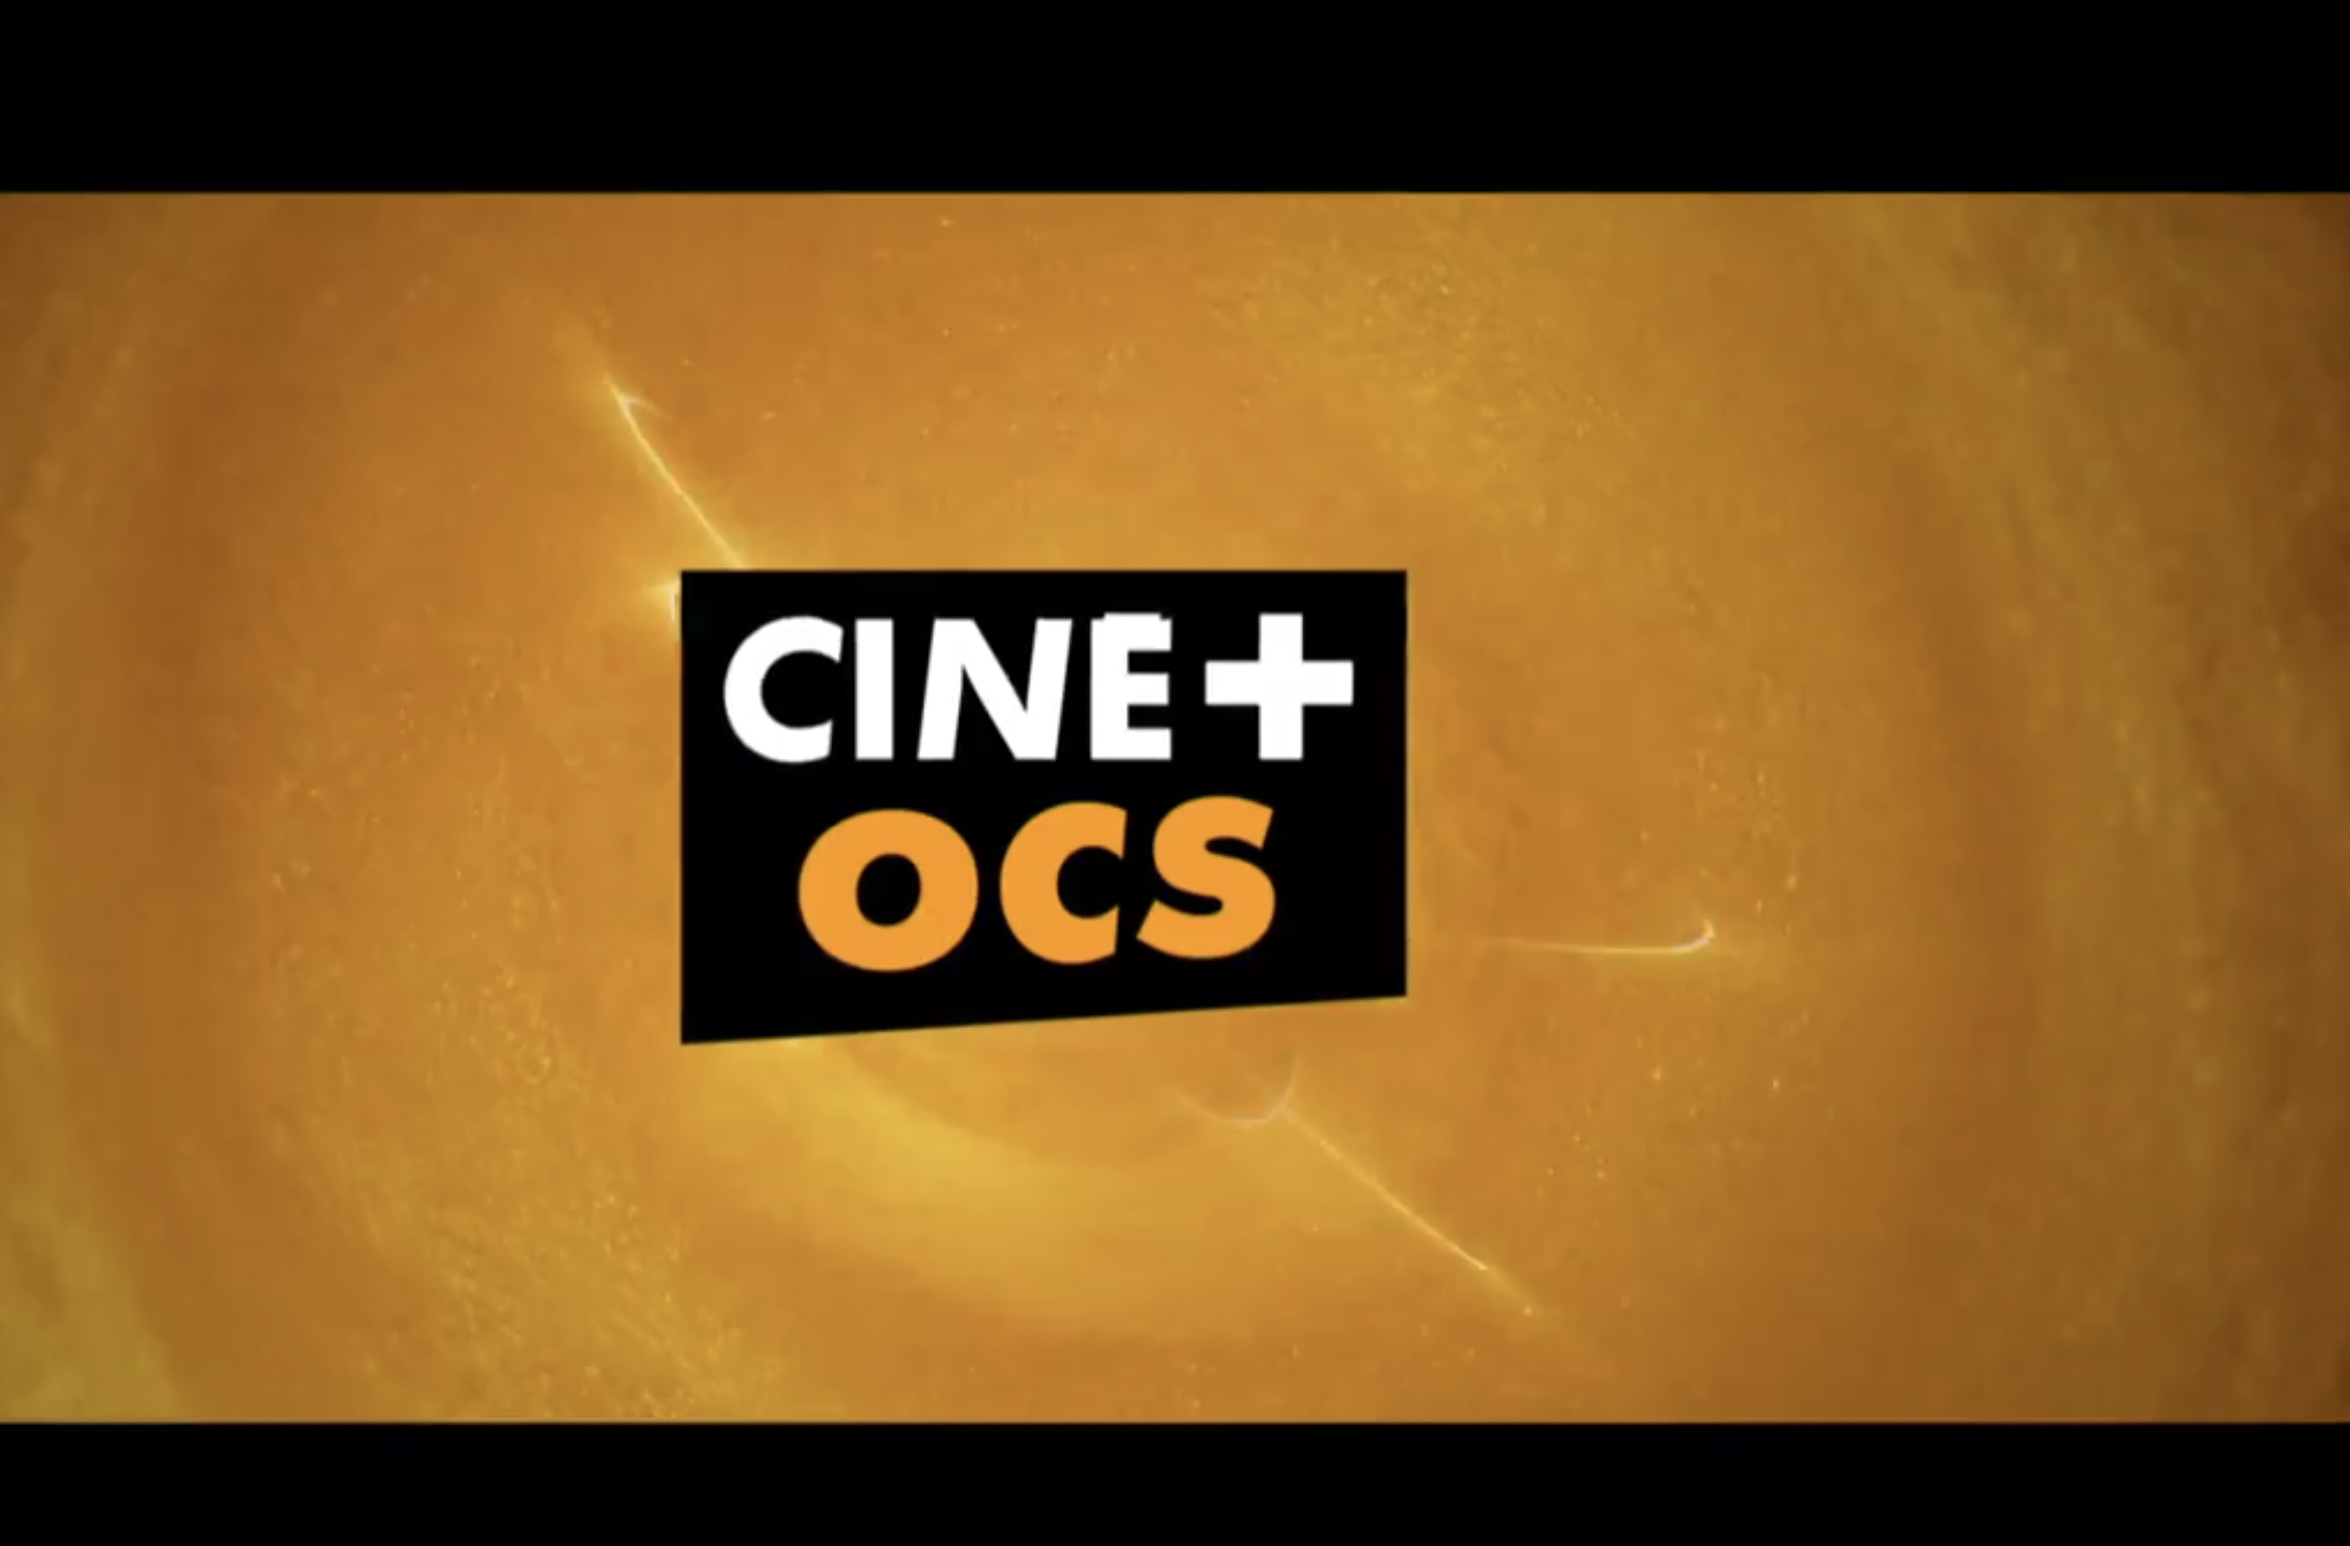 Ontdek de Canal+-abonnementen die deel uitmaken van het nieuwe Ciné+ OCS-aanbod